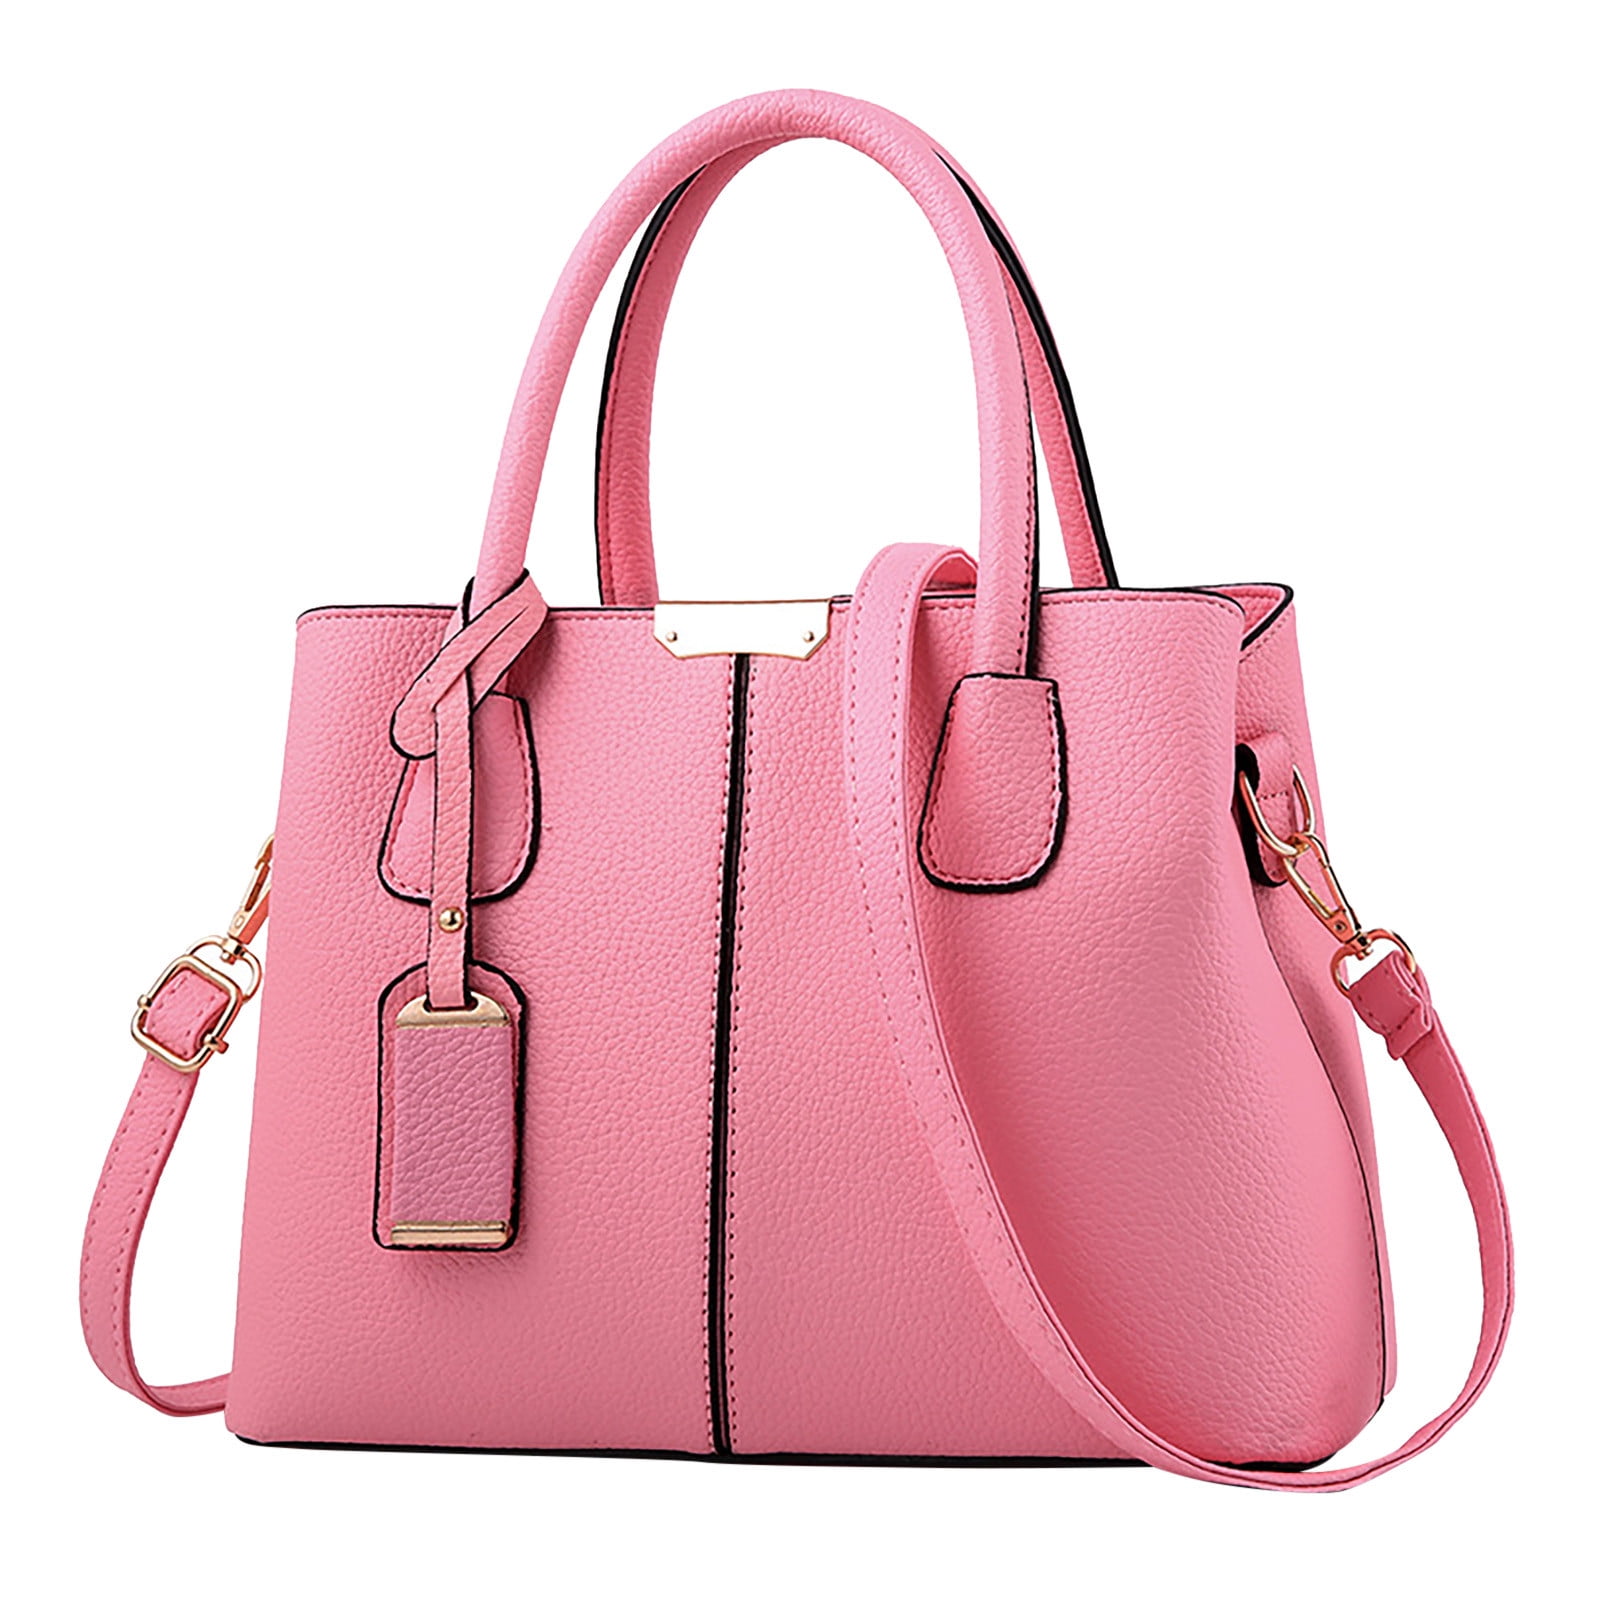 PhoneSoap Handbag For Women Roomy Fashion Womens Handbags Ladies Purse ...